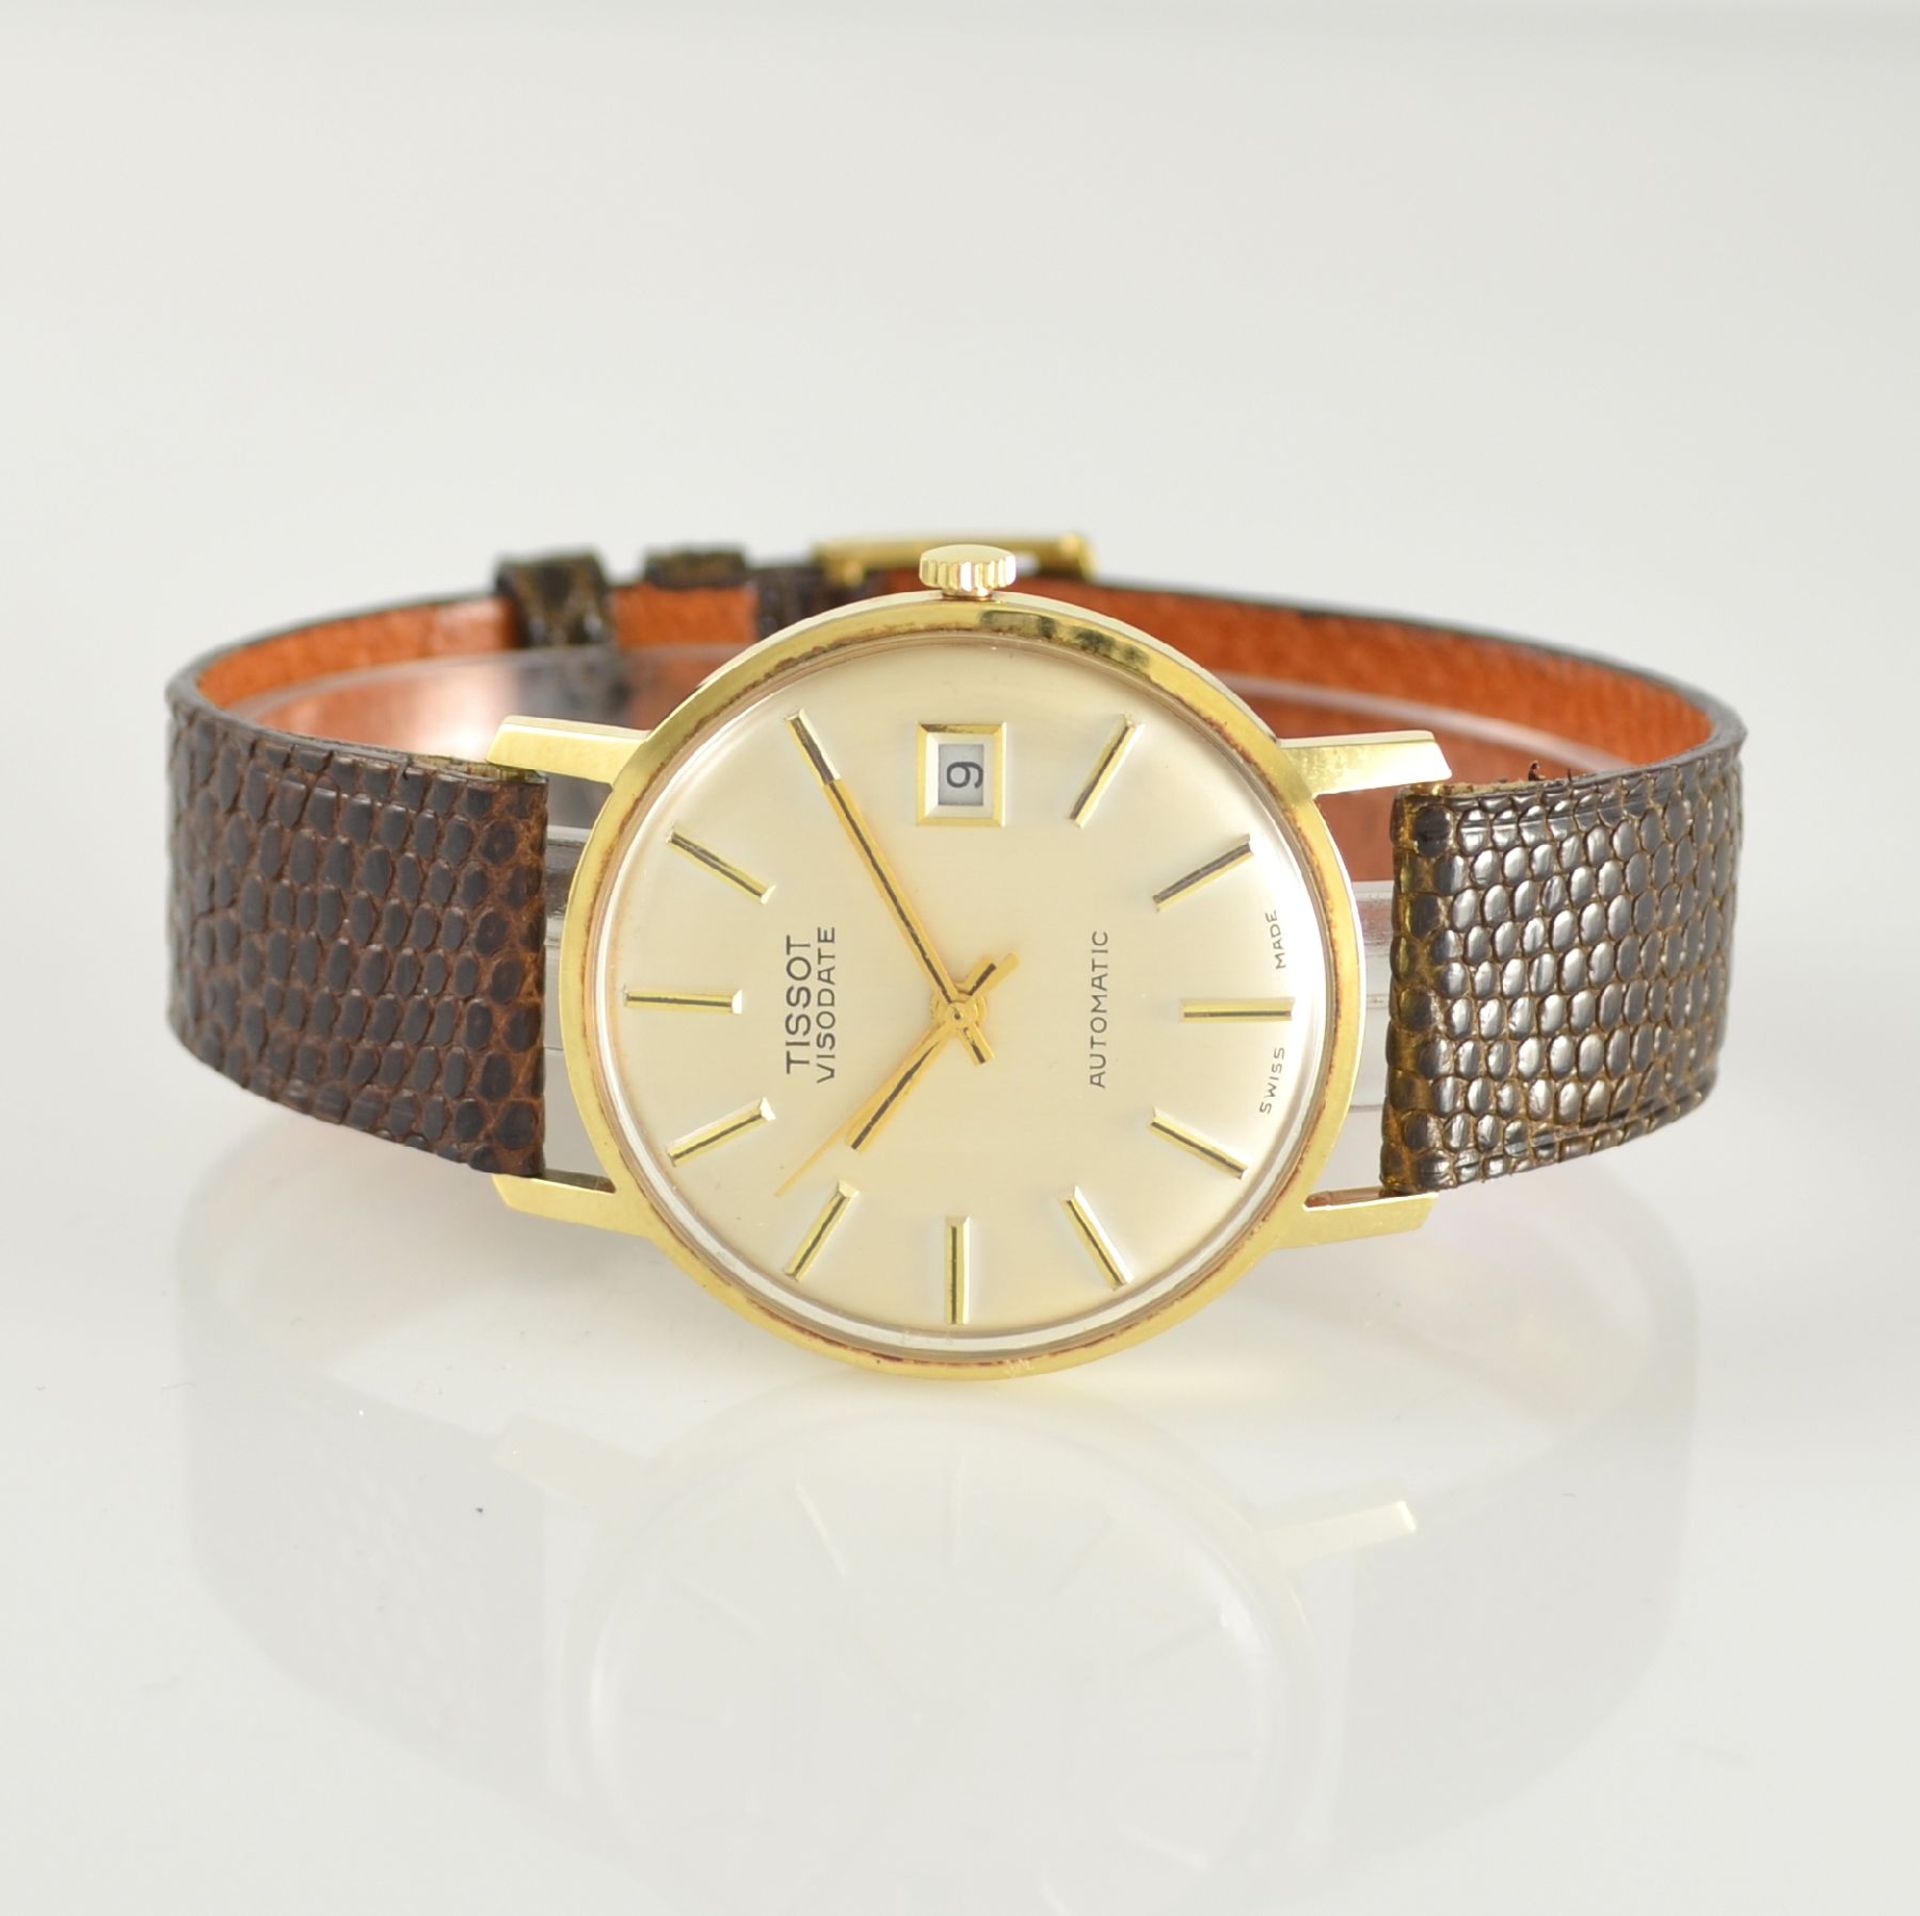 TISSOT Visodate Armbanduhr in GG 585/000, Schweiz um 1972, Automatik, Boden aufgedr., orig.